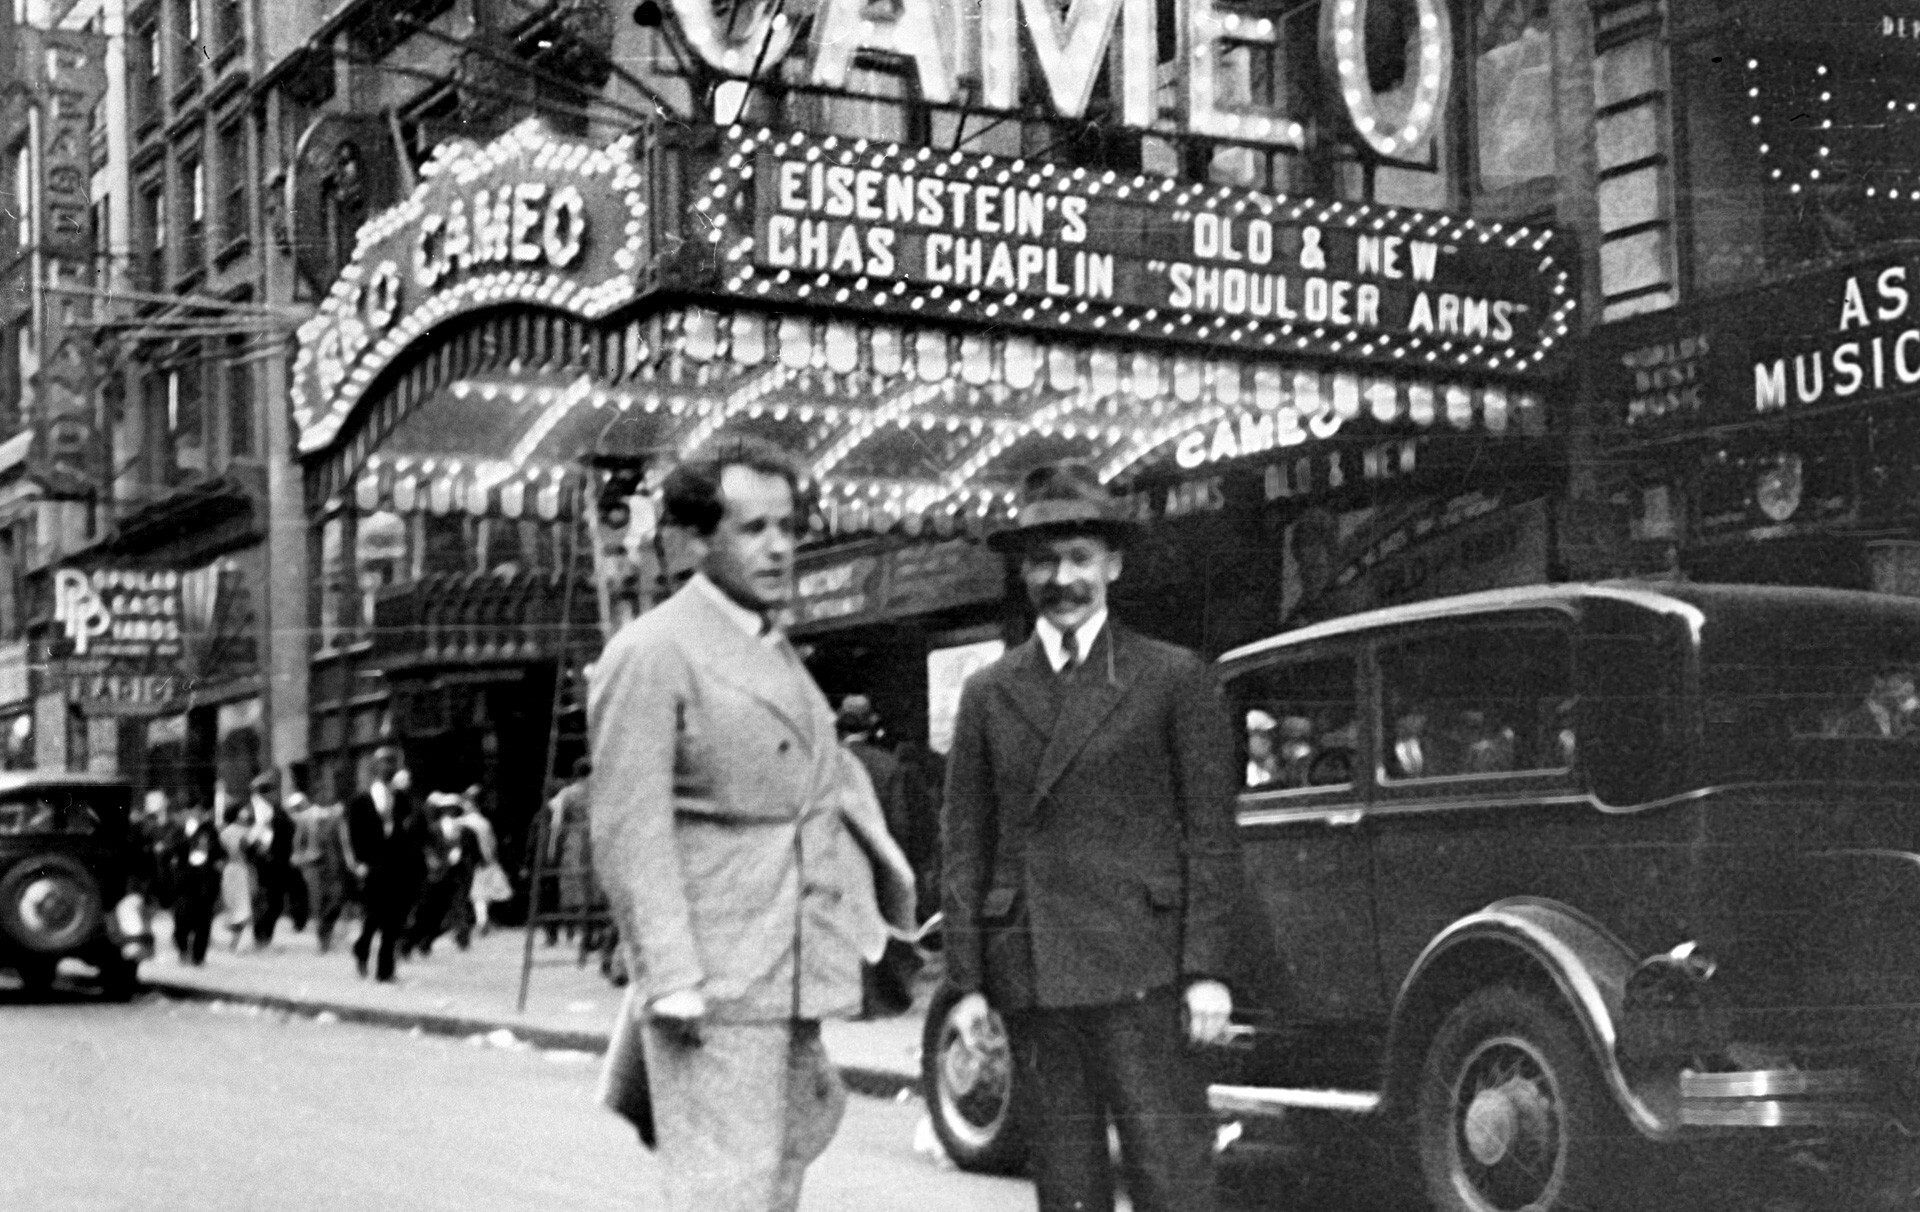 Eisenstein em Nova York, 1930